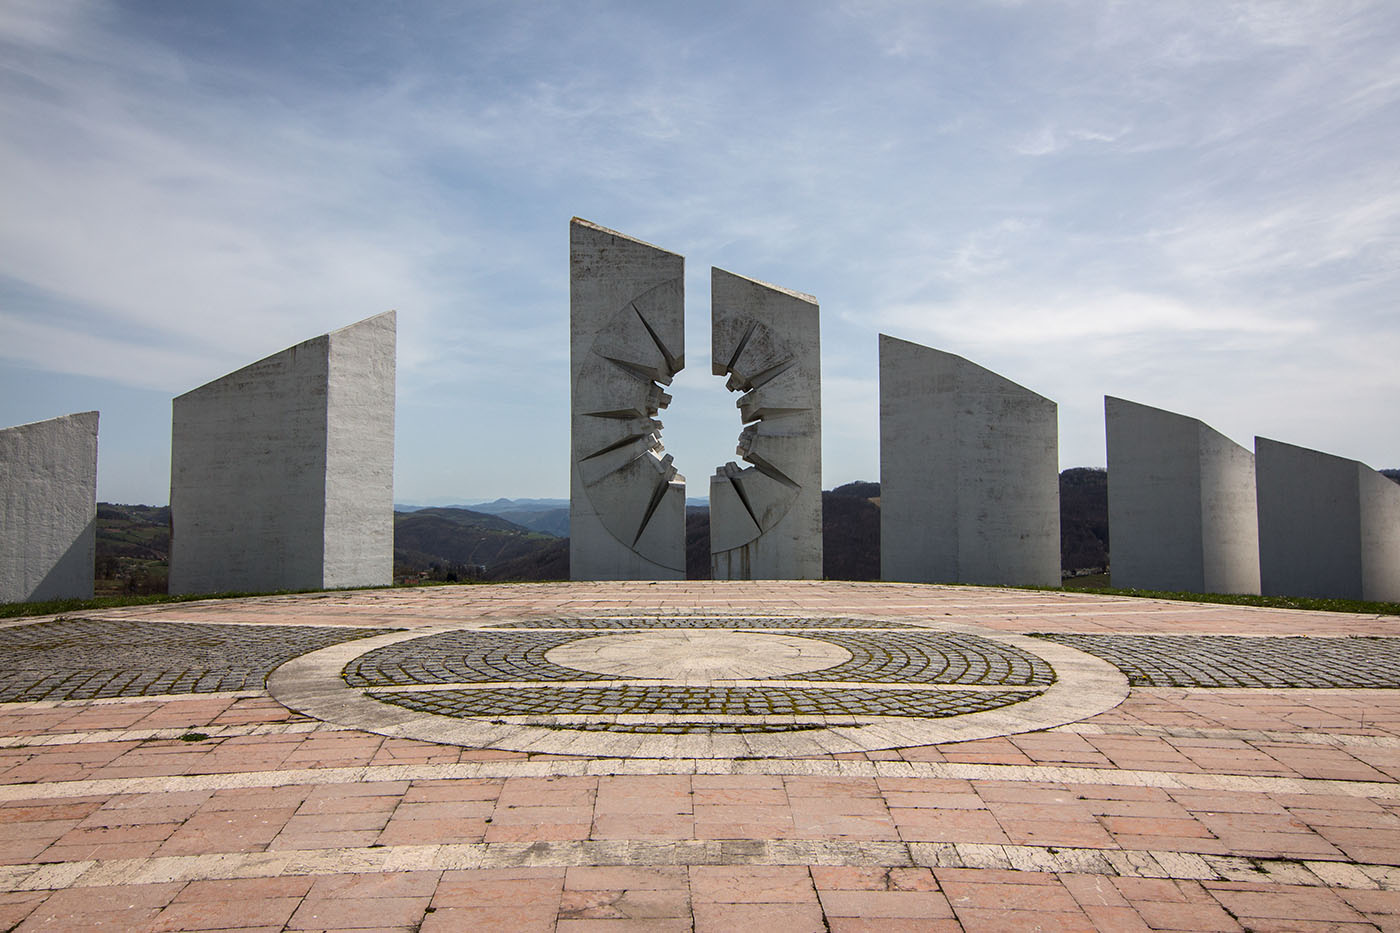 Kadinjača Memorial Park at Užice, Serbia (Miodrag Živković and Aleksandar Đokić, 1979).